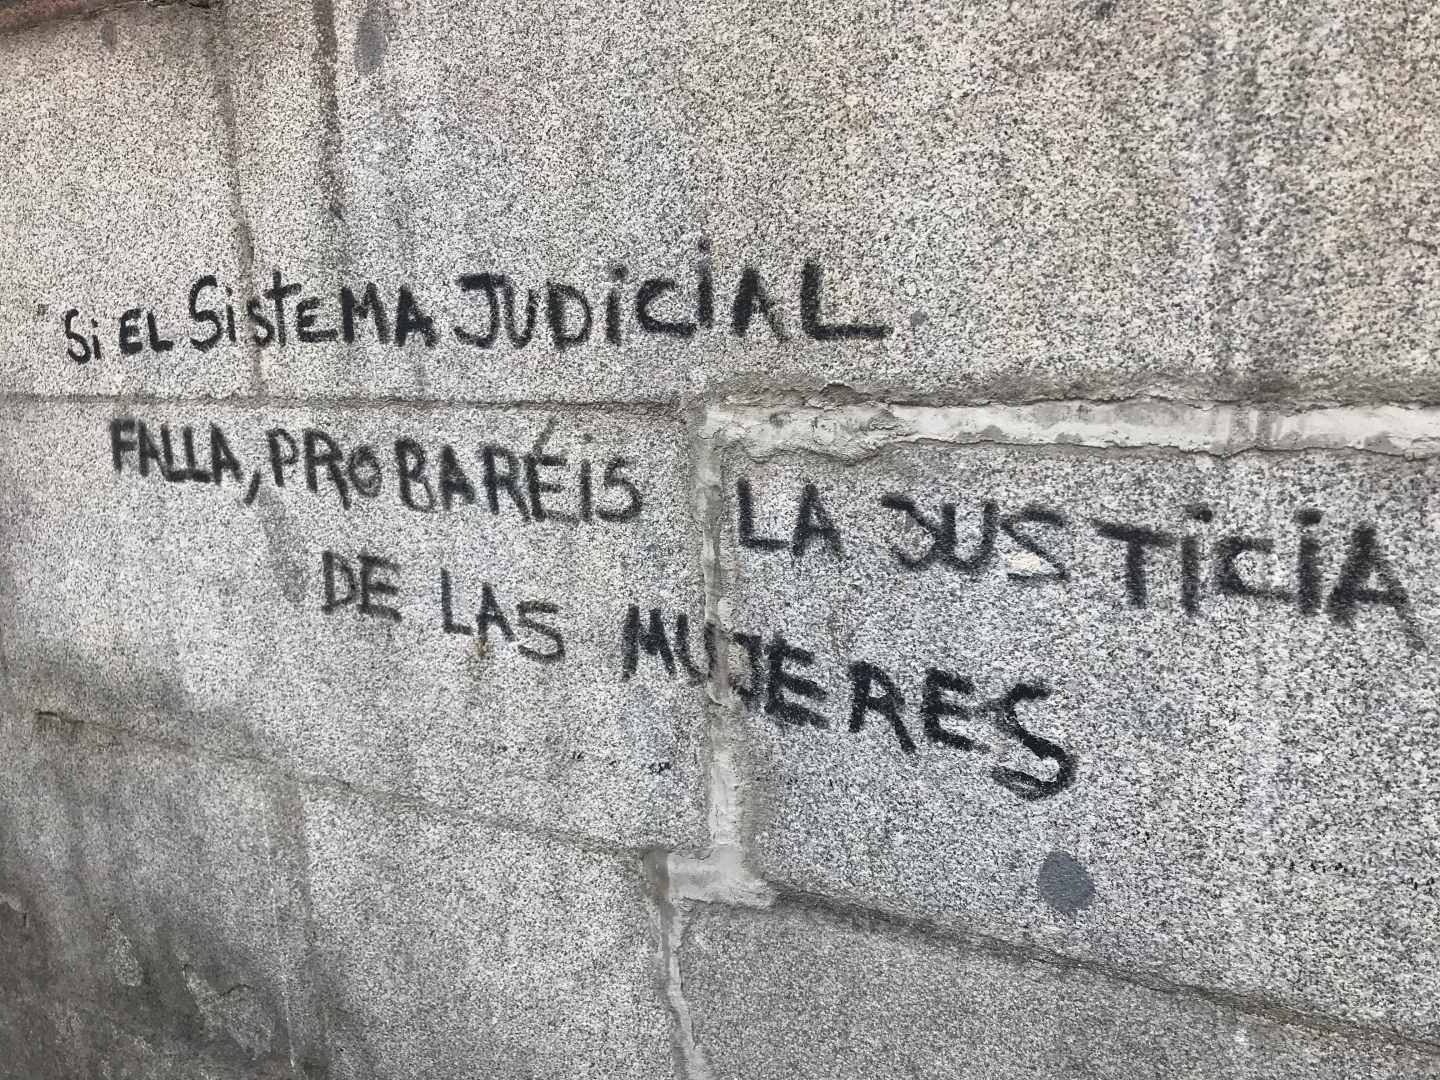 Sentencia de la Manada: pintada tras la manifestación del jueves en Madrid.